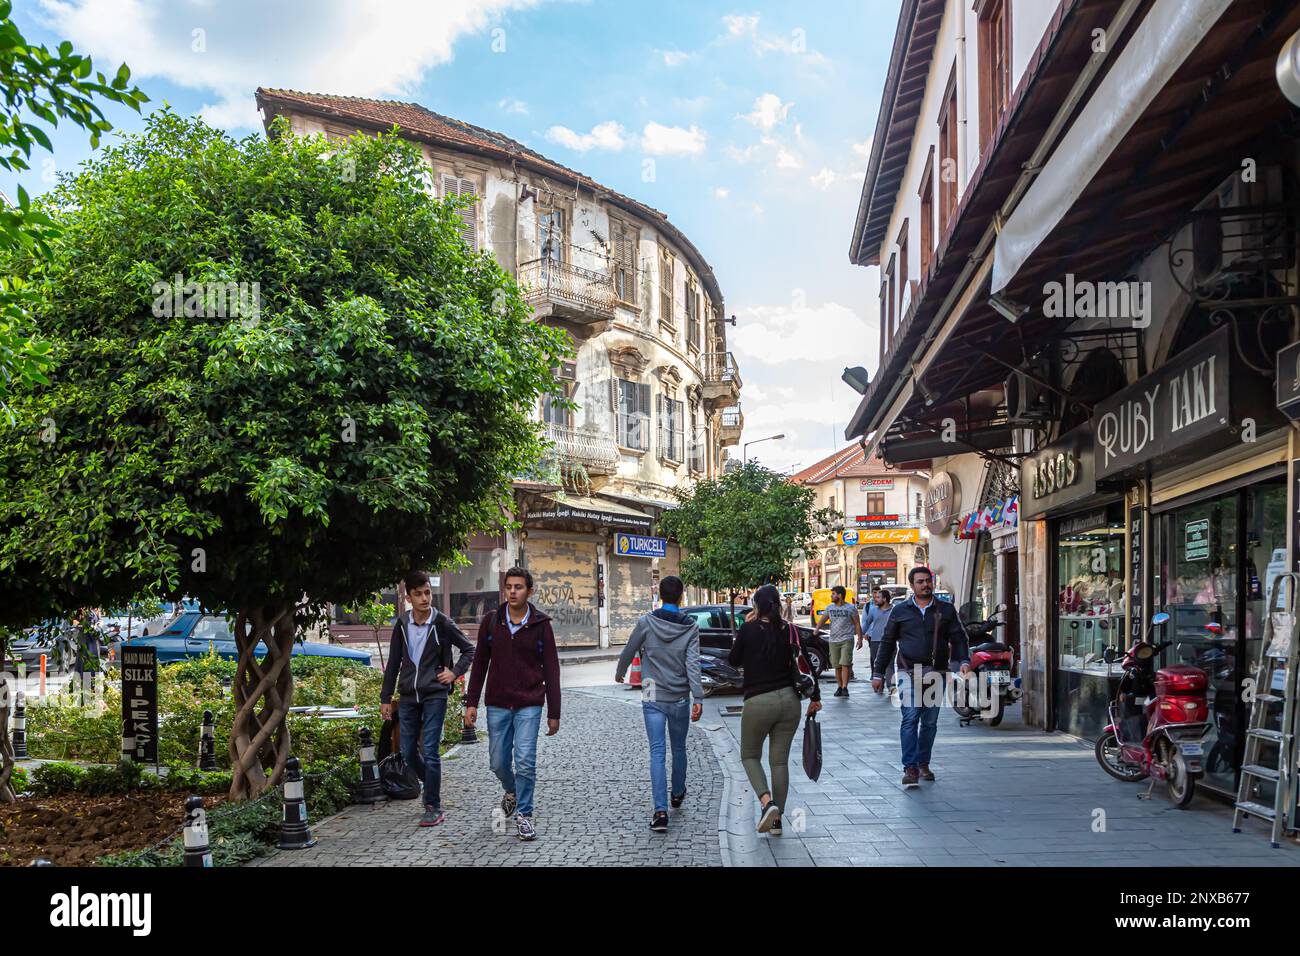 Antakya,Hatay,Turkey-31 octobre,2017: Une vue sur un bazar avec des maisons historiques et des magasins dans la ville antique d'Antakya dans la ville turque de Hatay. Banque D'Images